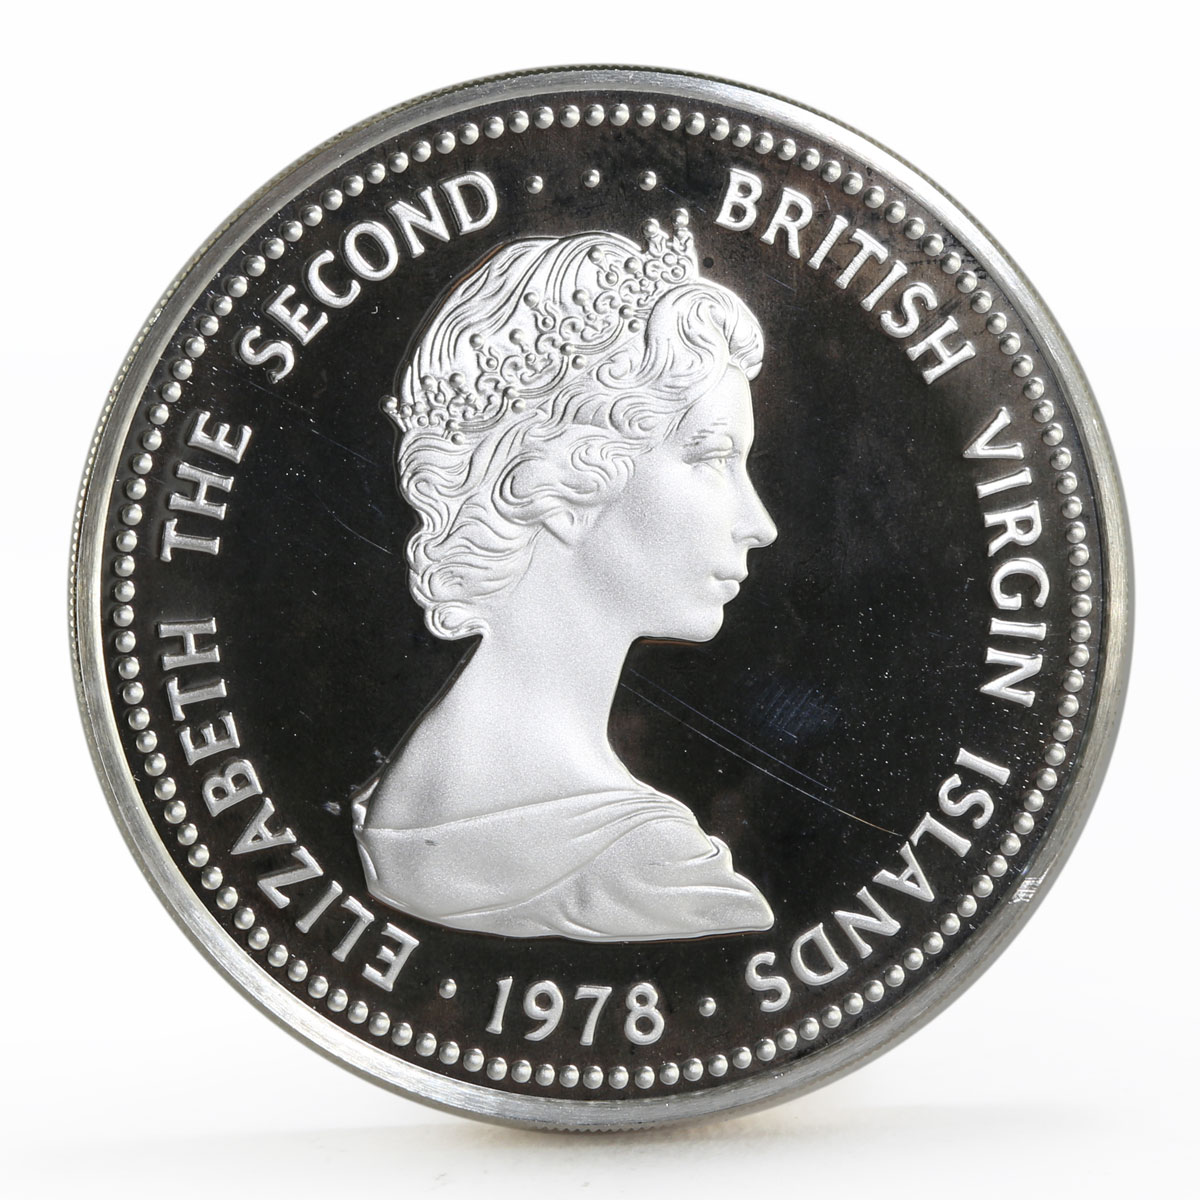 British Virgin Islands 25 dollars Coronation Jubilee silver coin 1978